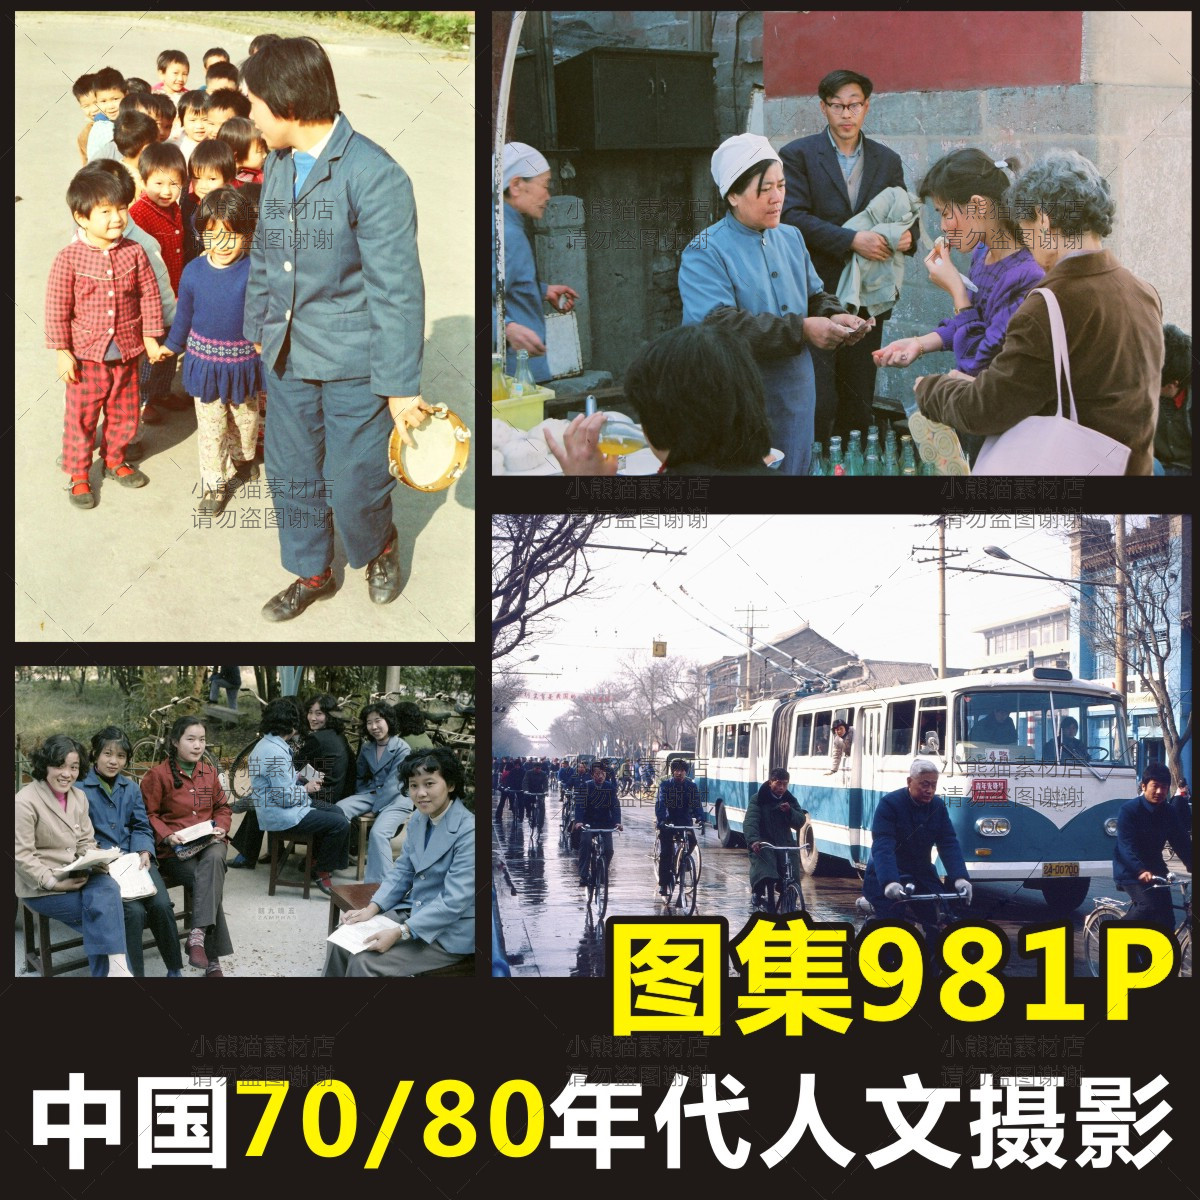 中国70/80年代人文纪实摄影图片老照片场景相片素材参考资源鉴赏